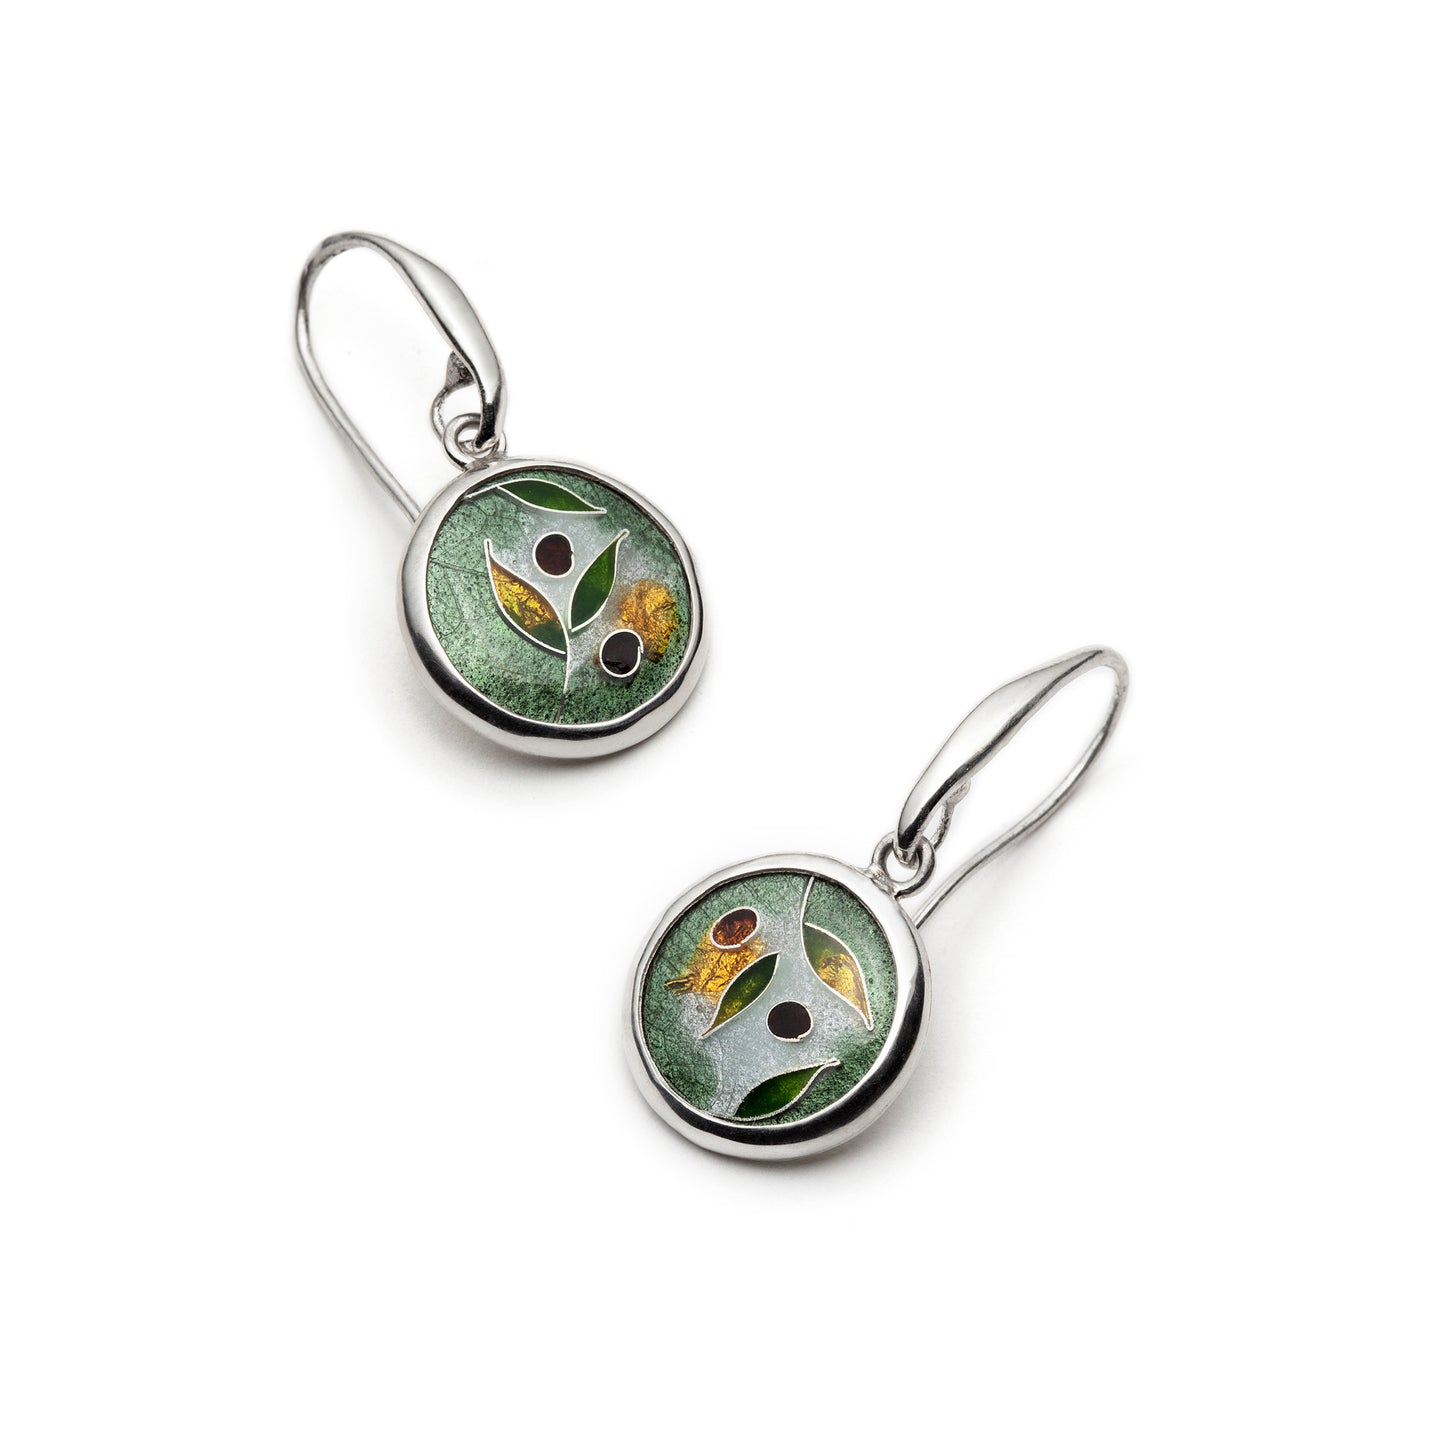 Olive Branch earrings